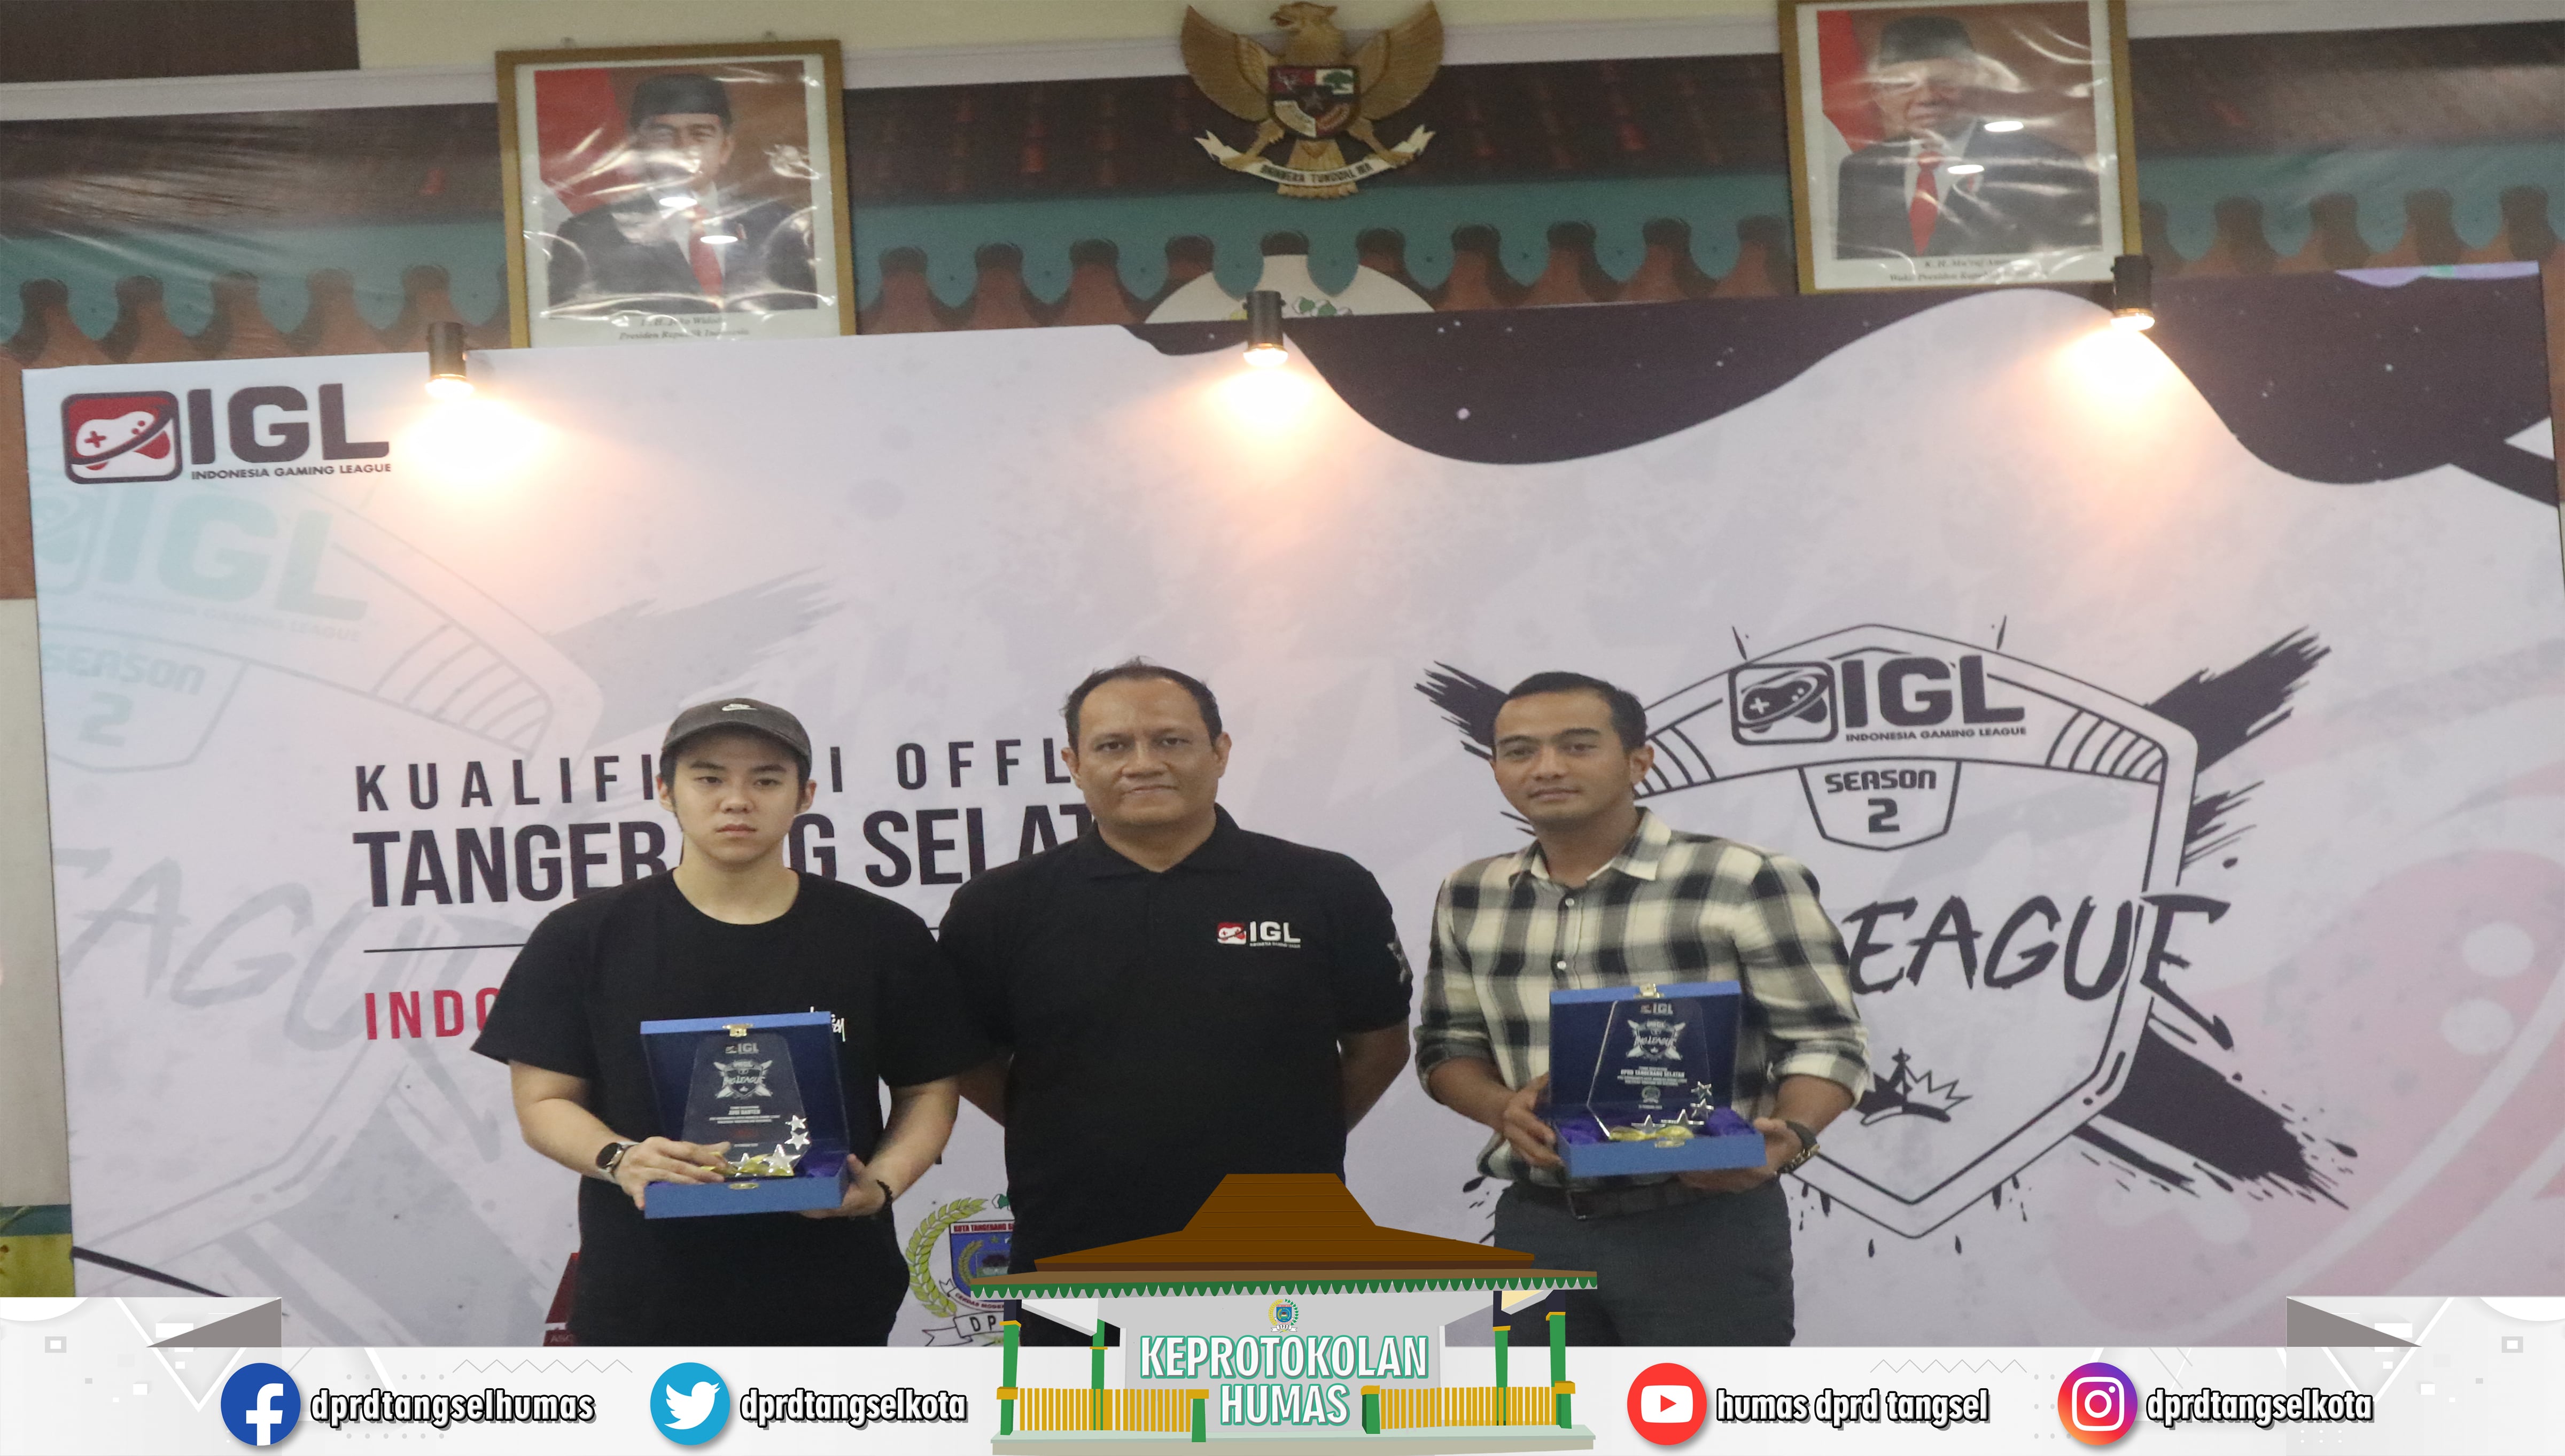 Ahmad Syawqi menghadiri acara Indonesia Gaming League